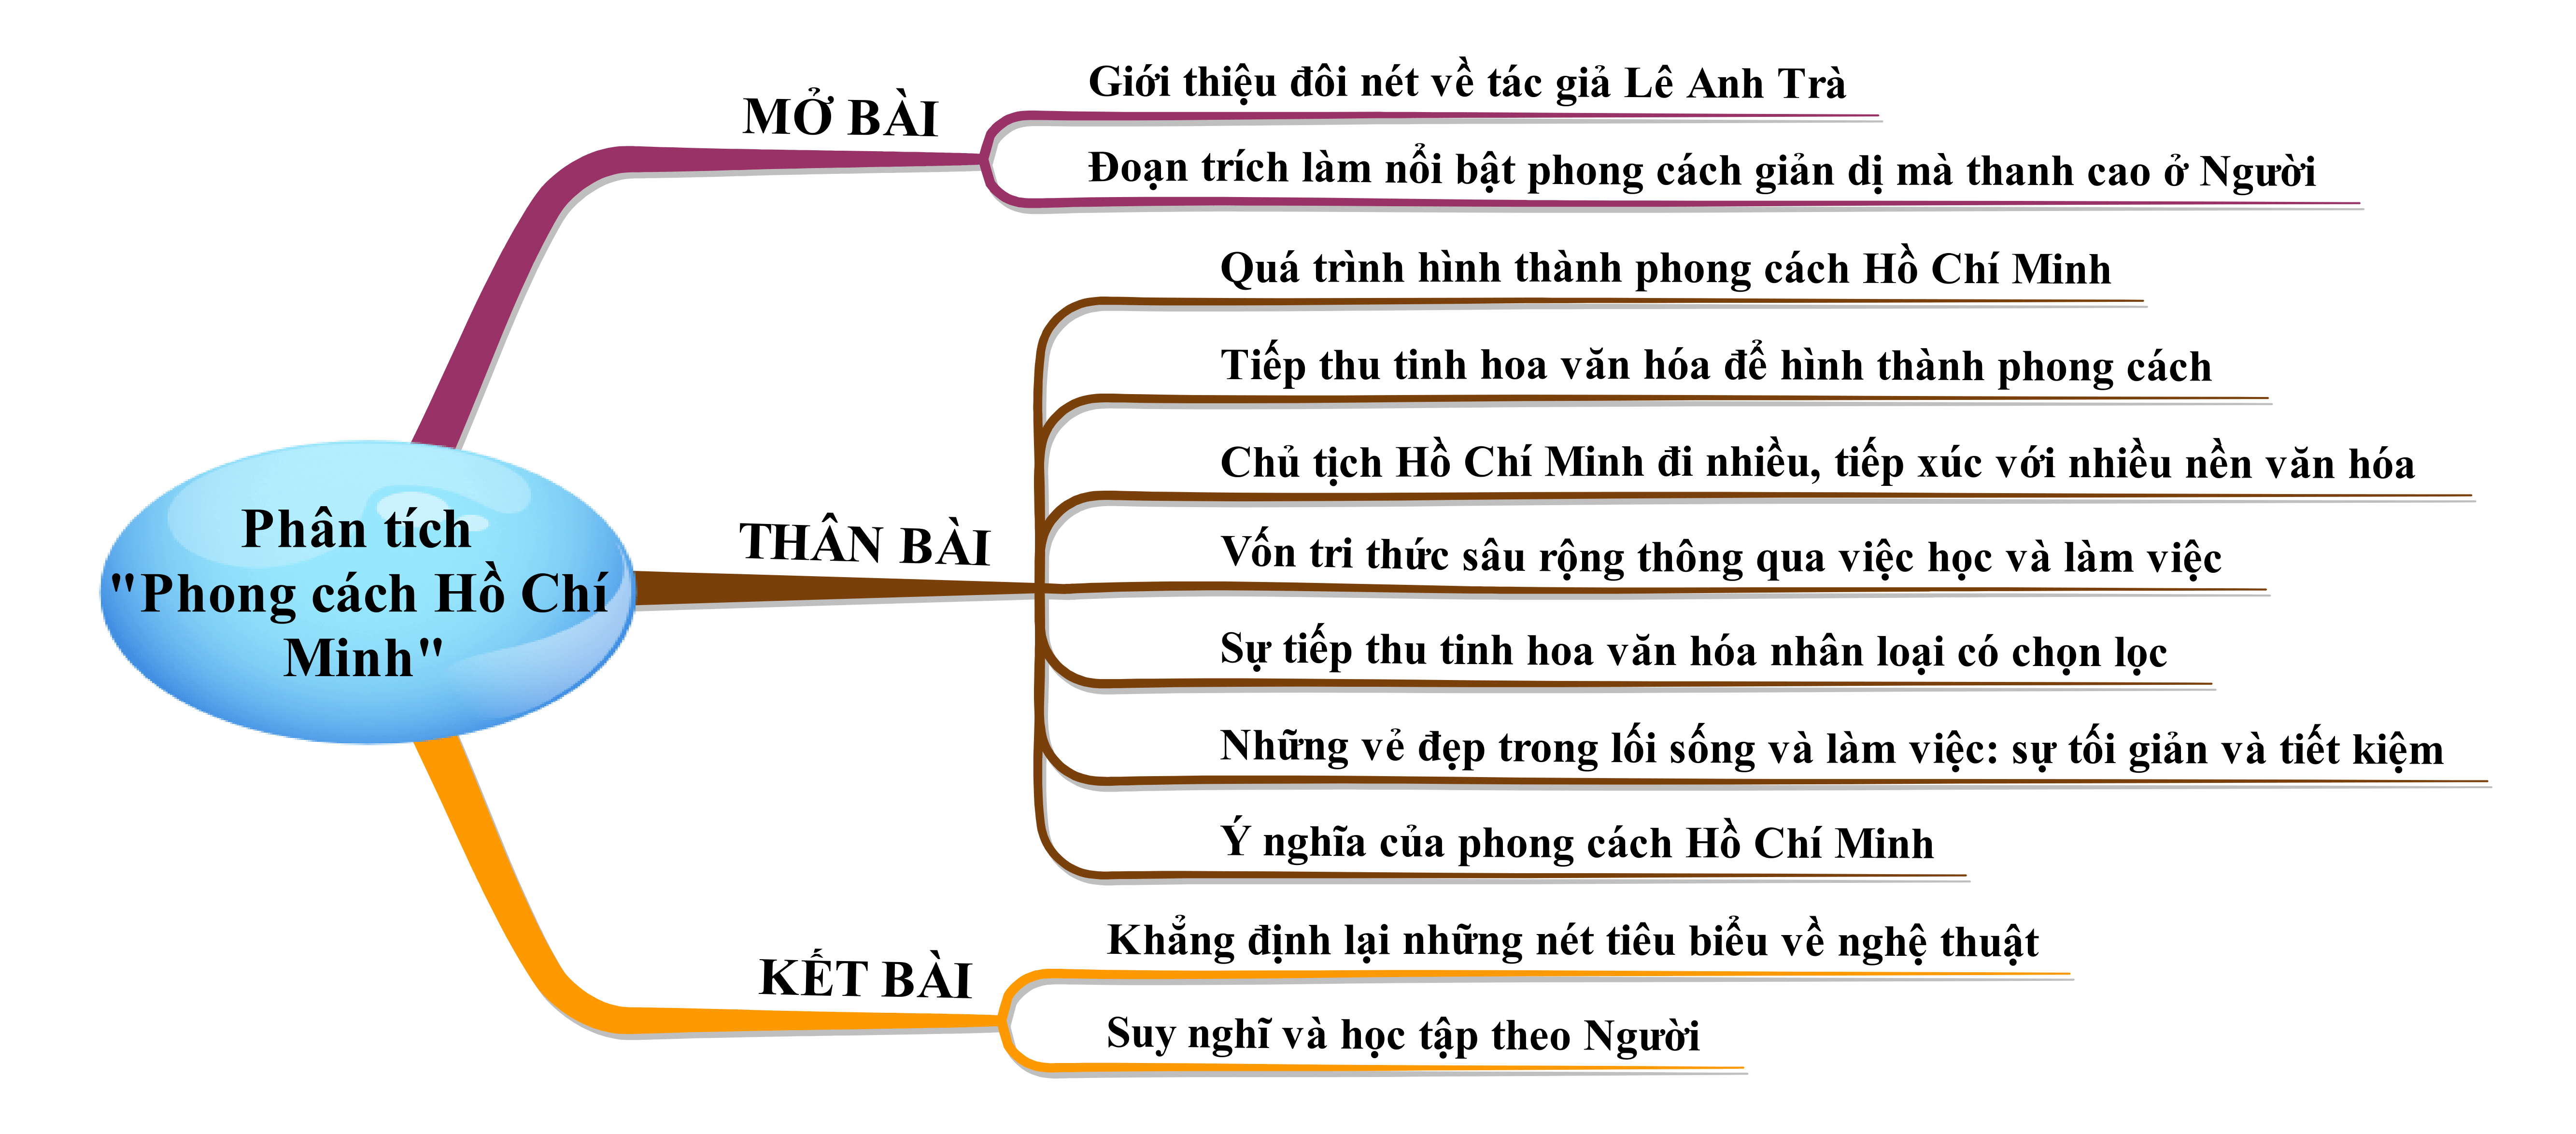 Phân tích văn bản Phong cách Hồ Chí Minh